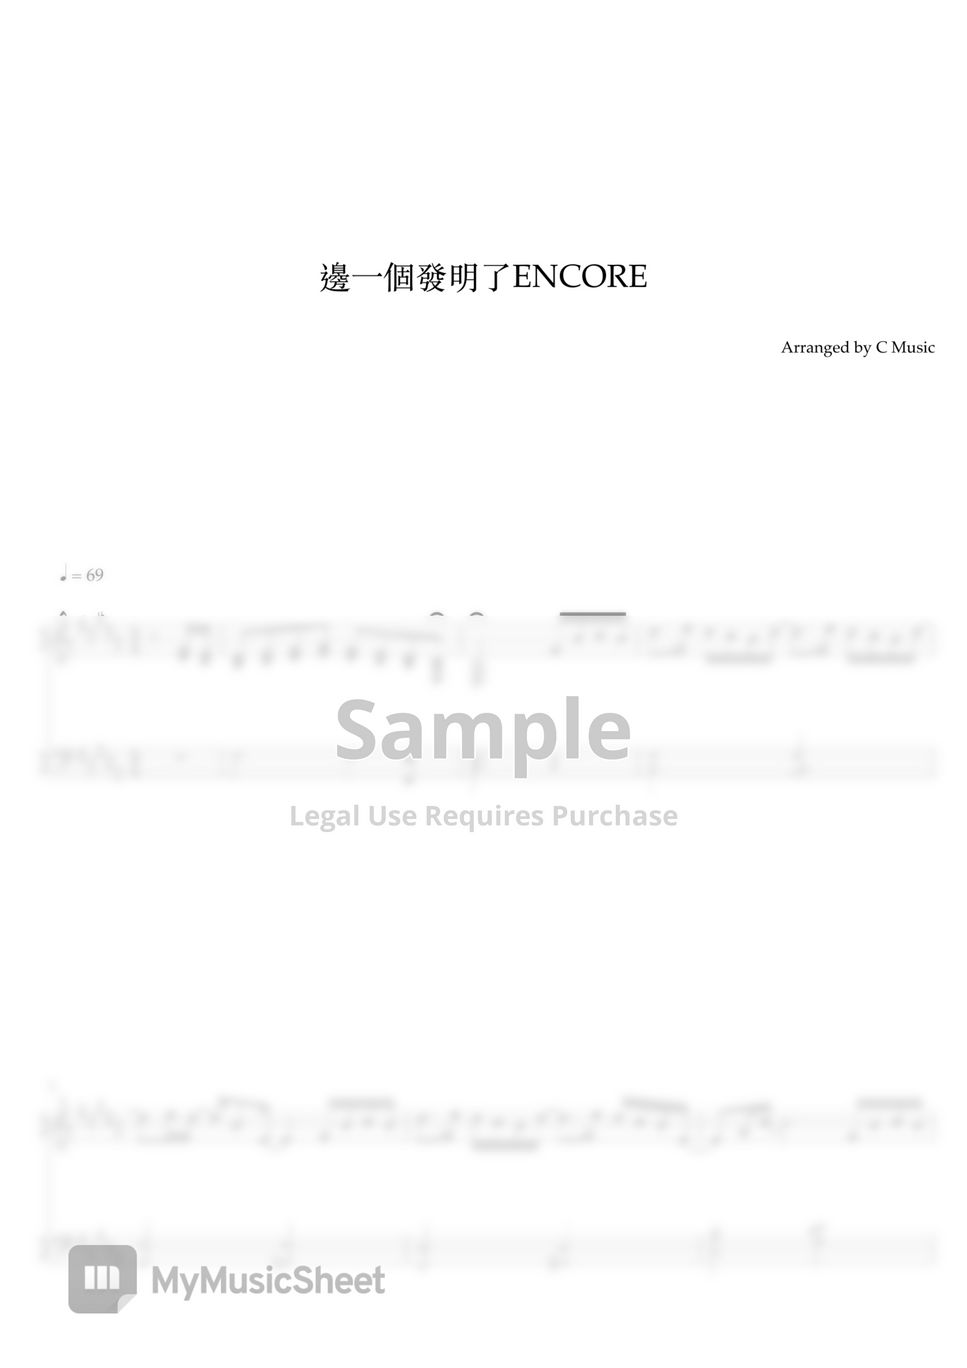 林家謙 Terence Lam - 邊一個發明了ENCORE by C Music